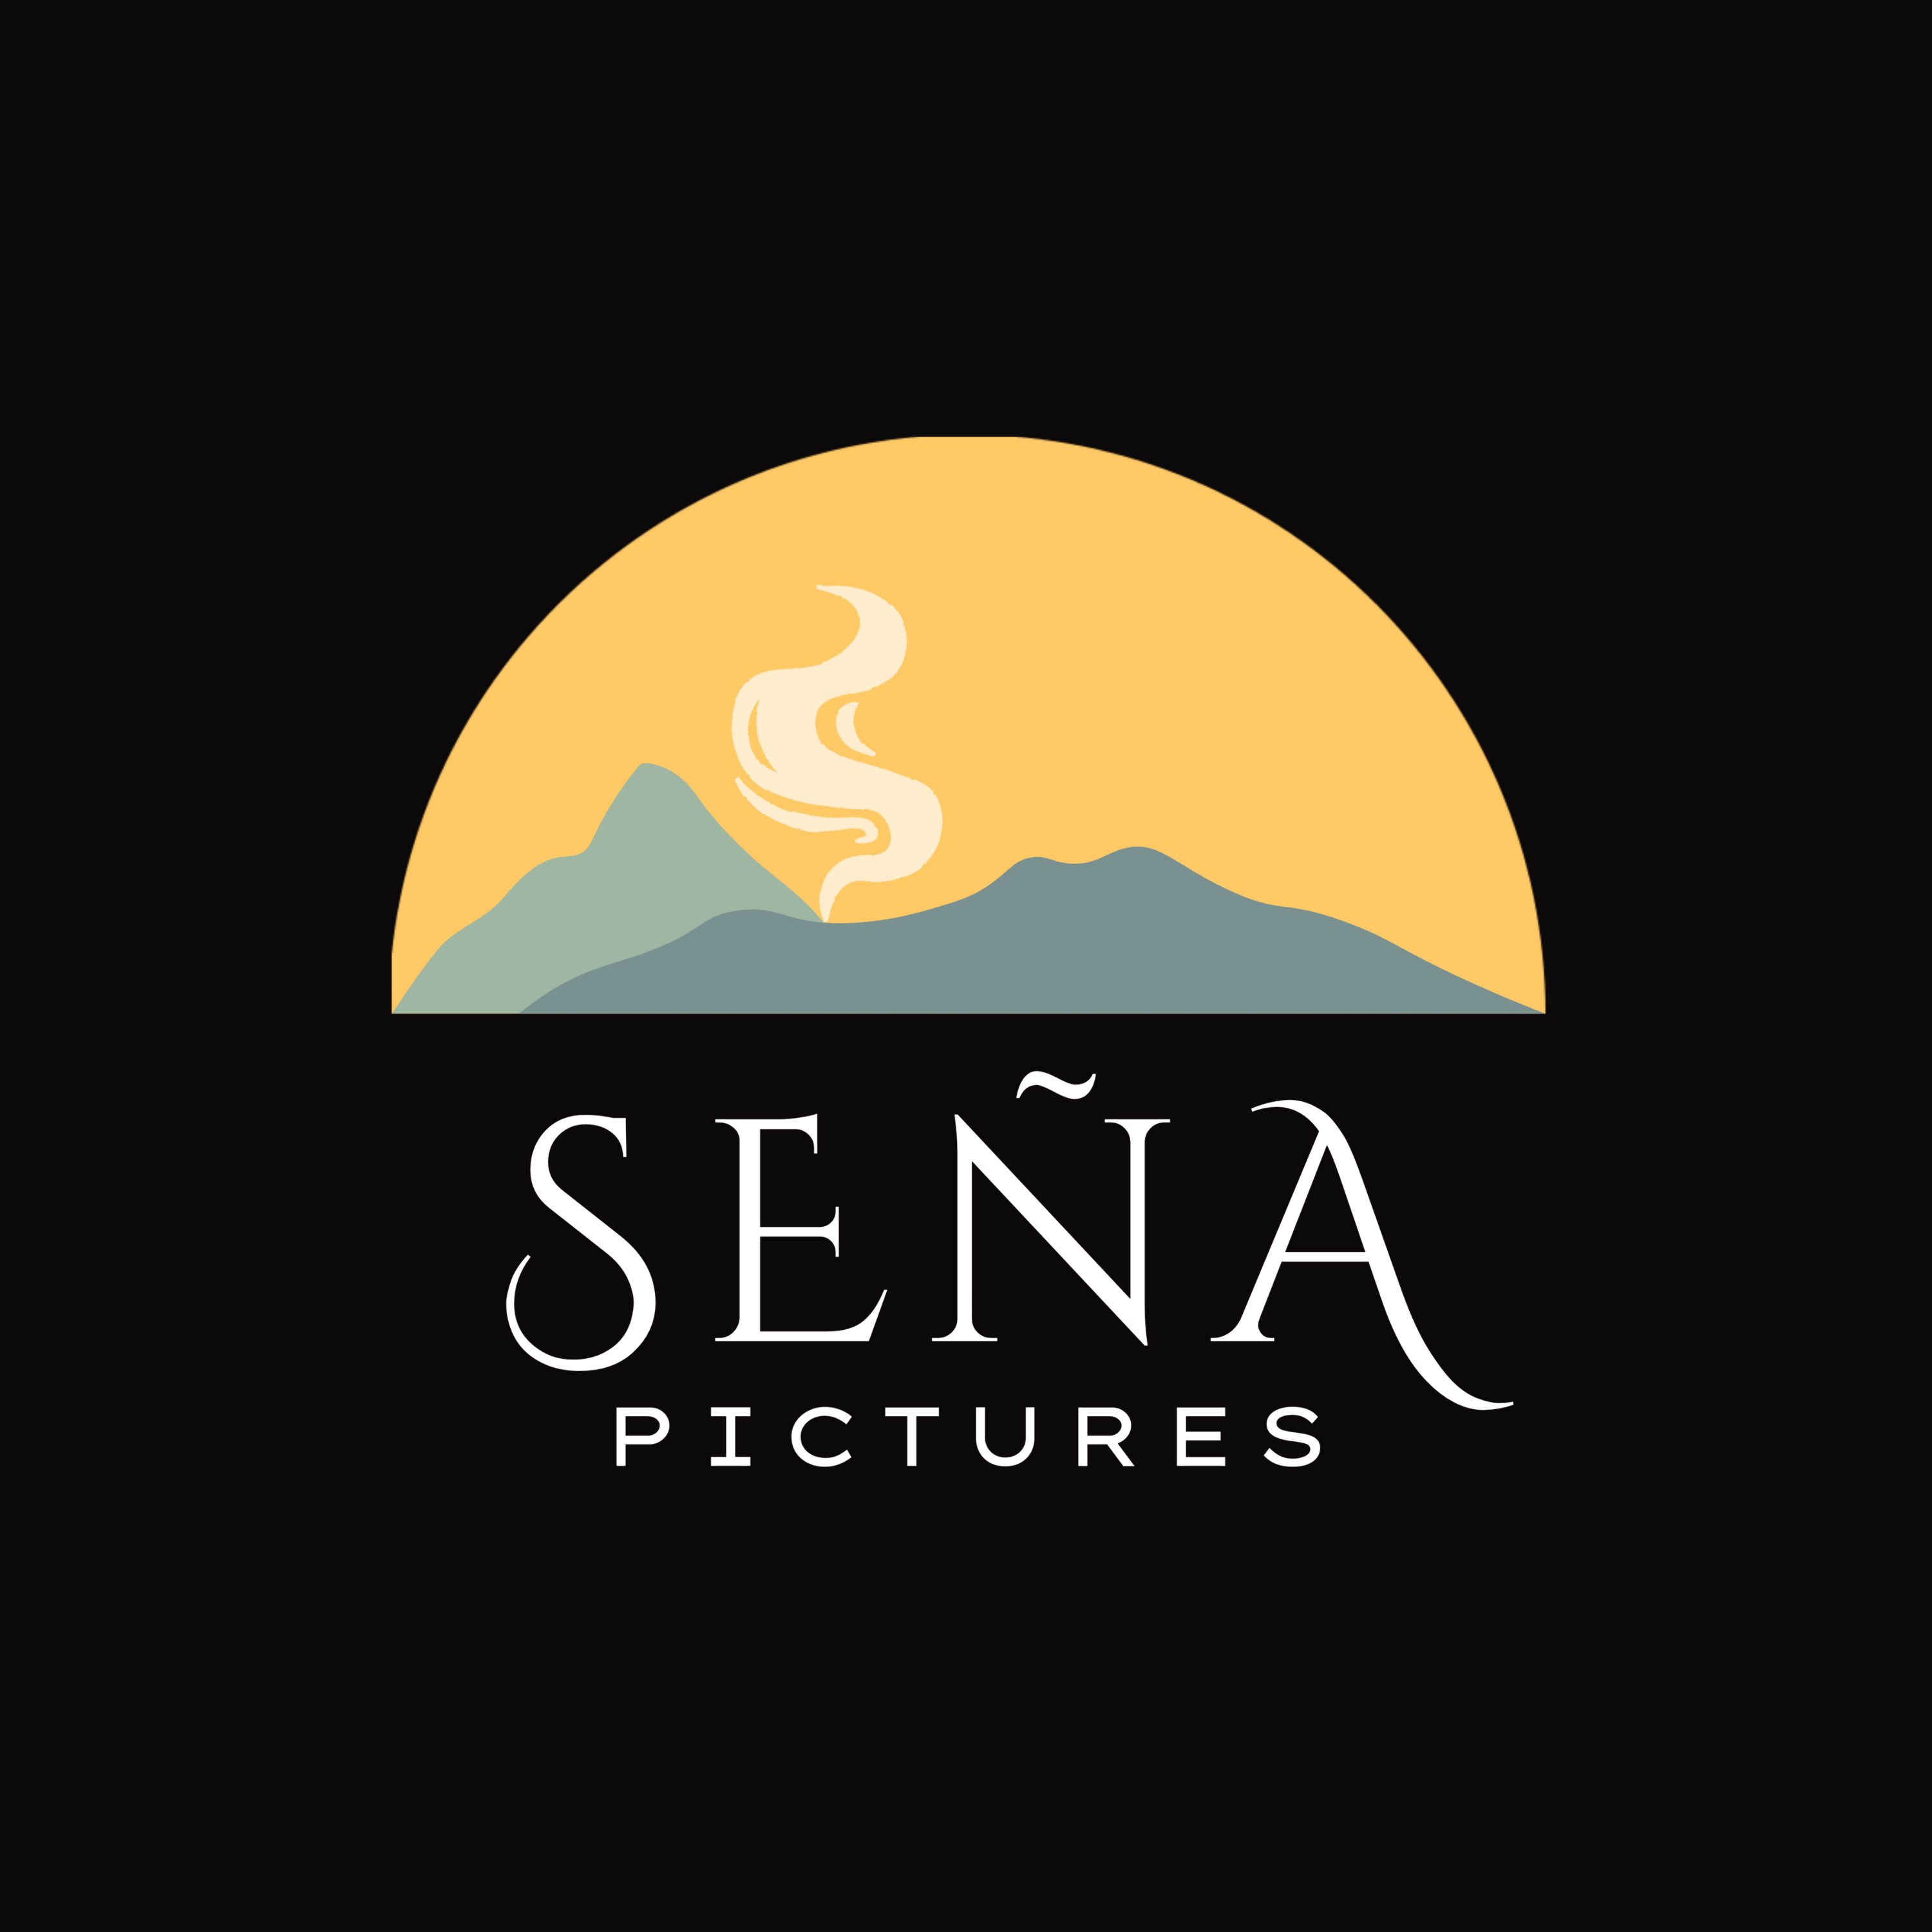 Seña Pictures logo